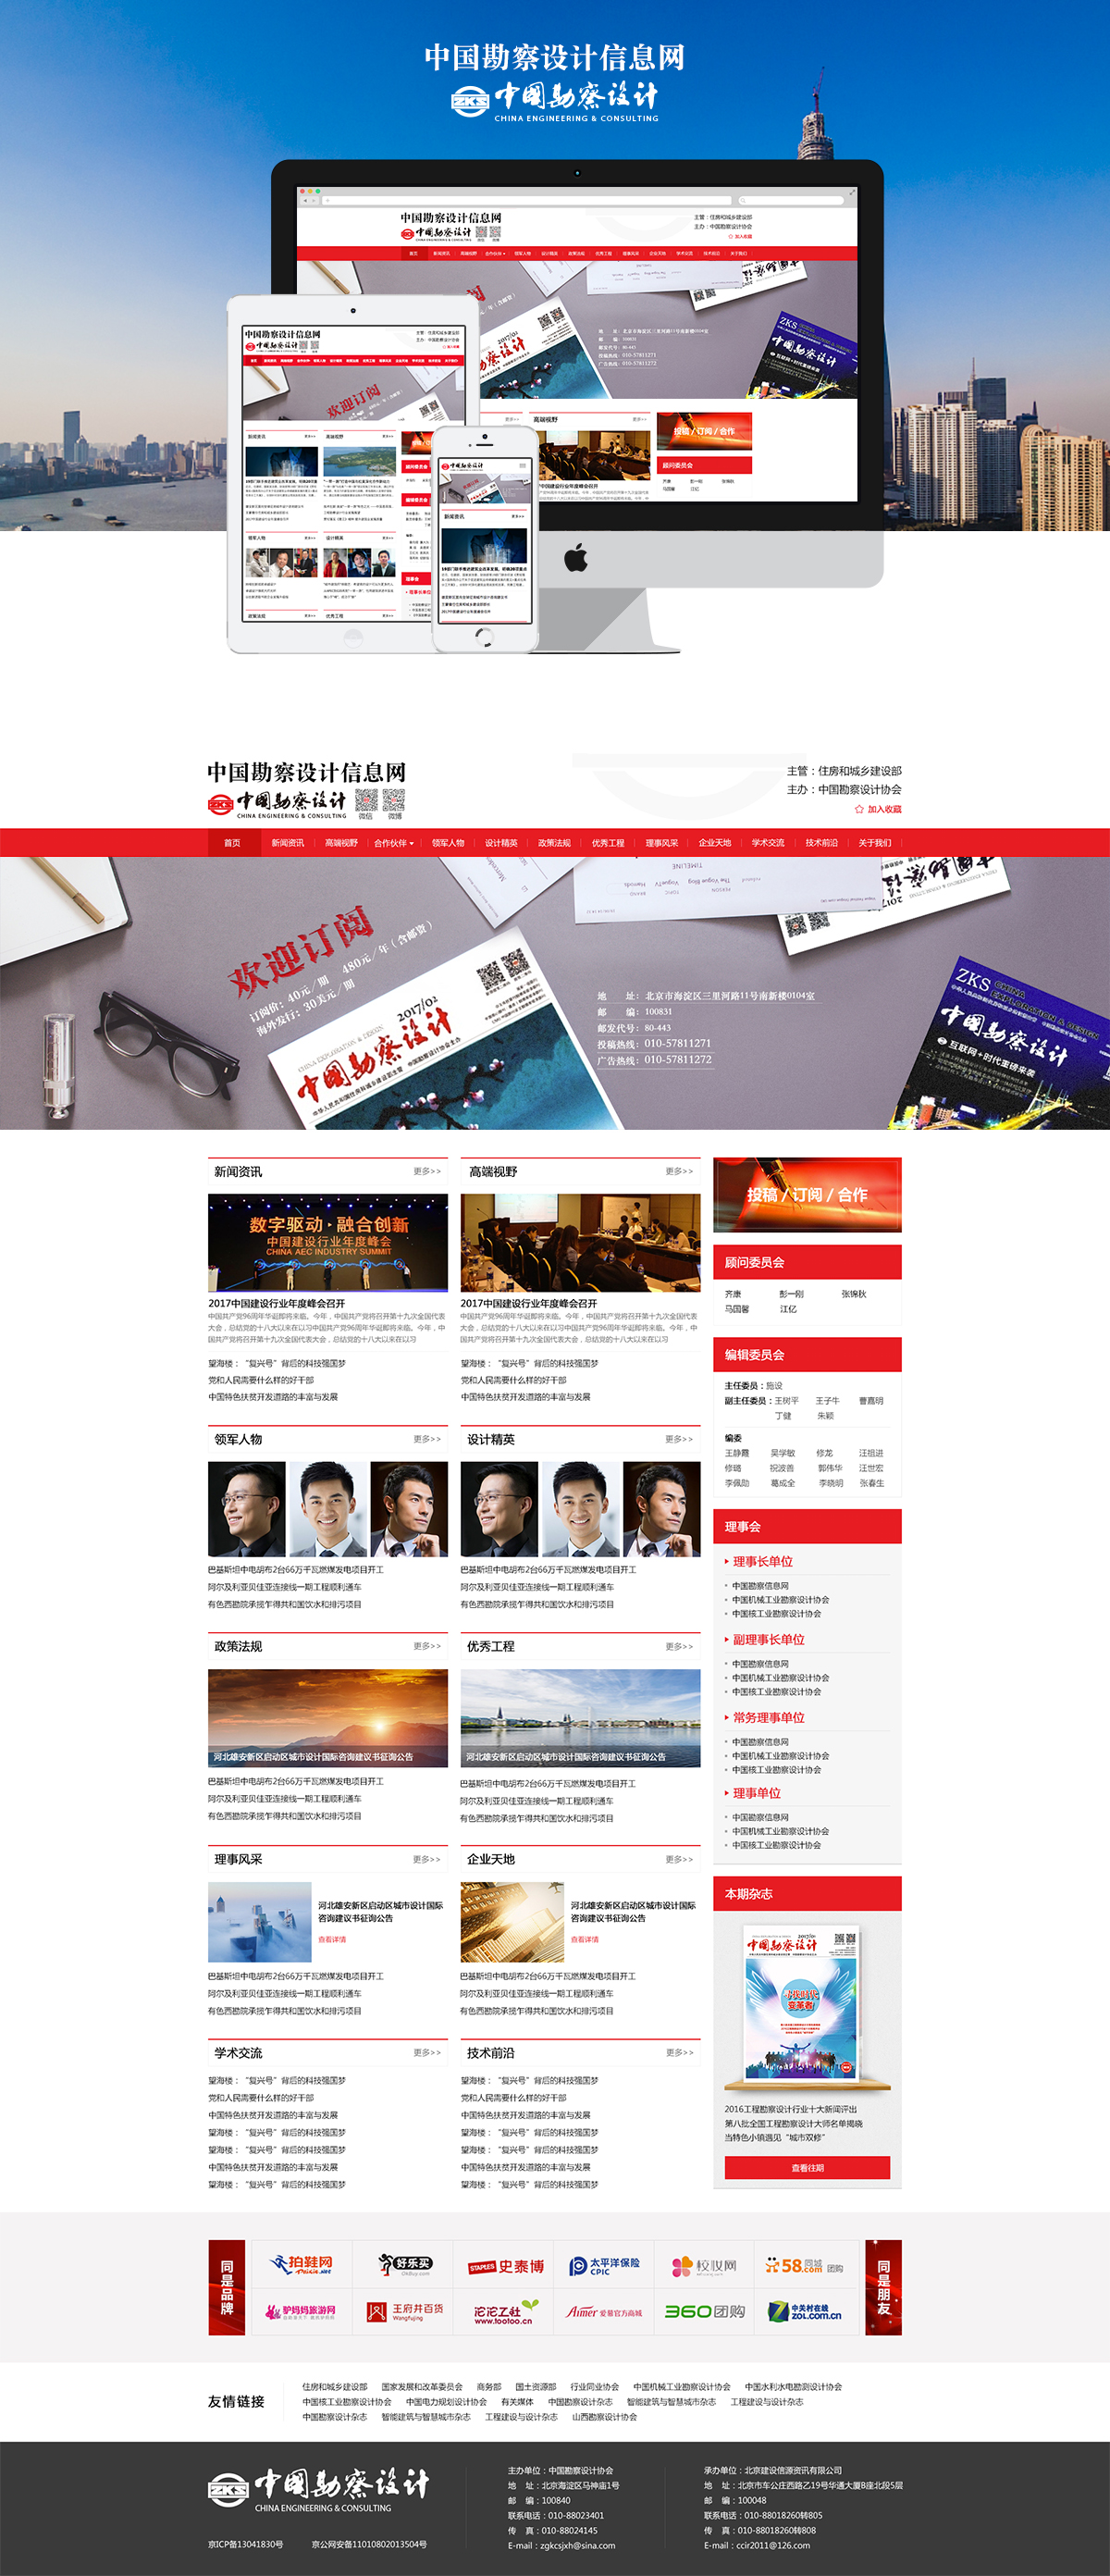 中国勘察设计杂志官网建设